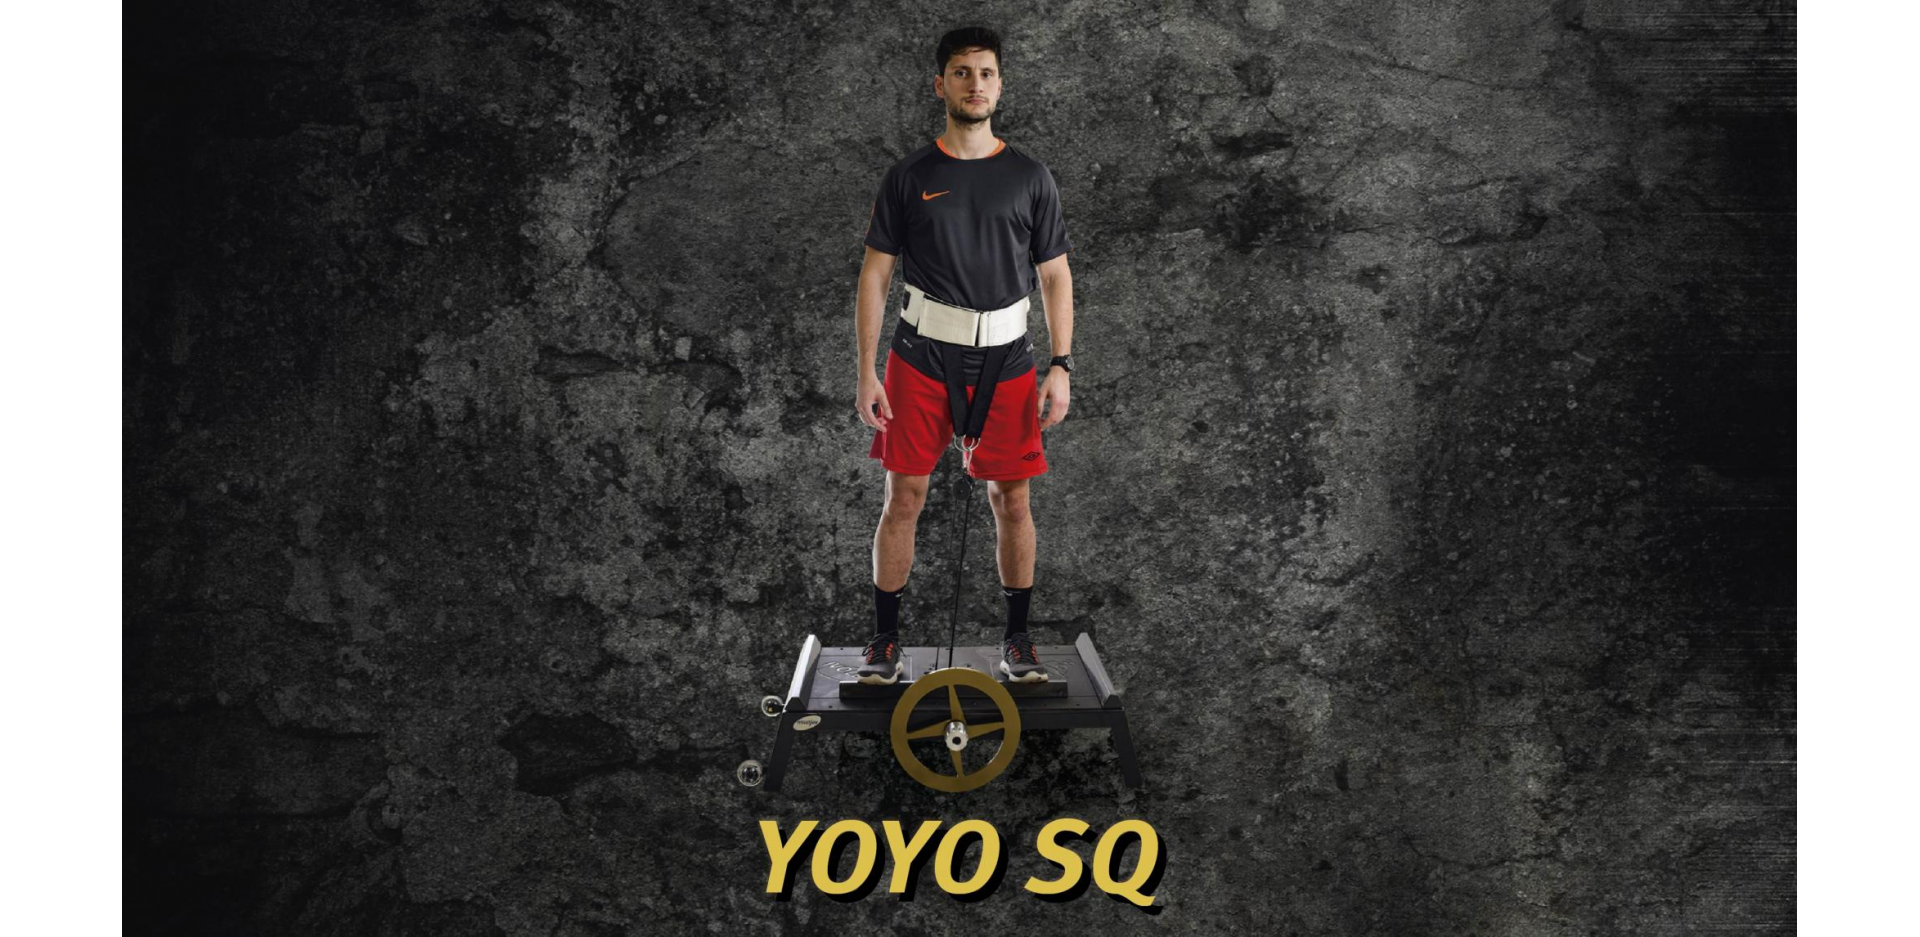 Спортсмен  и инерционный тренажер для приседаний YoYo SQ производства Ivolution